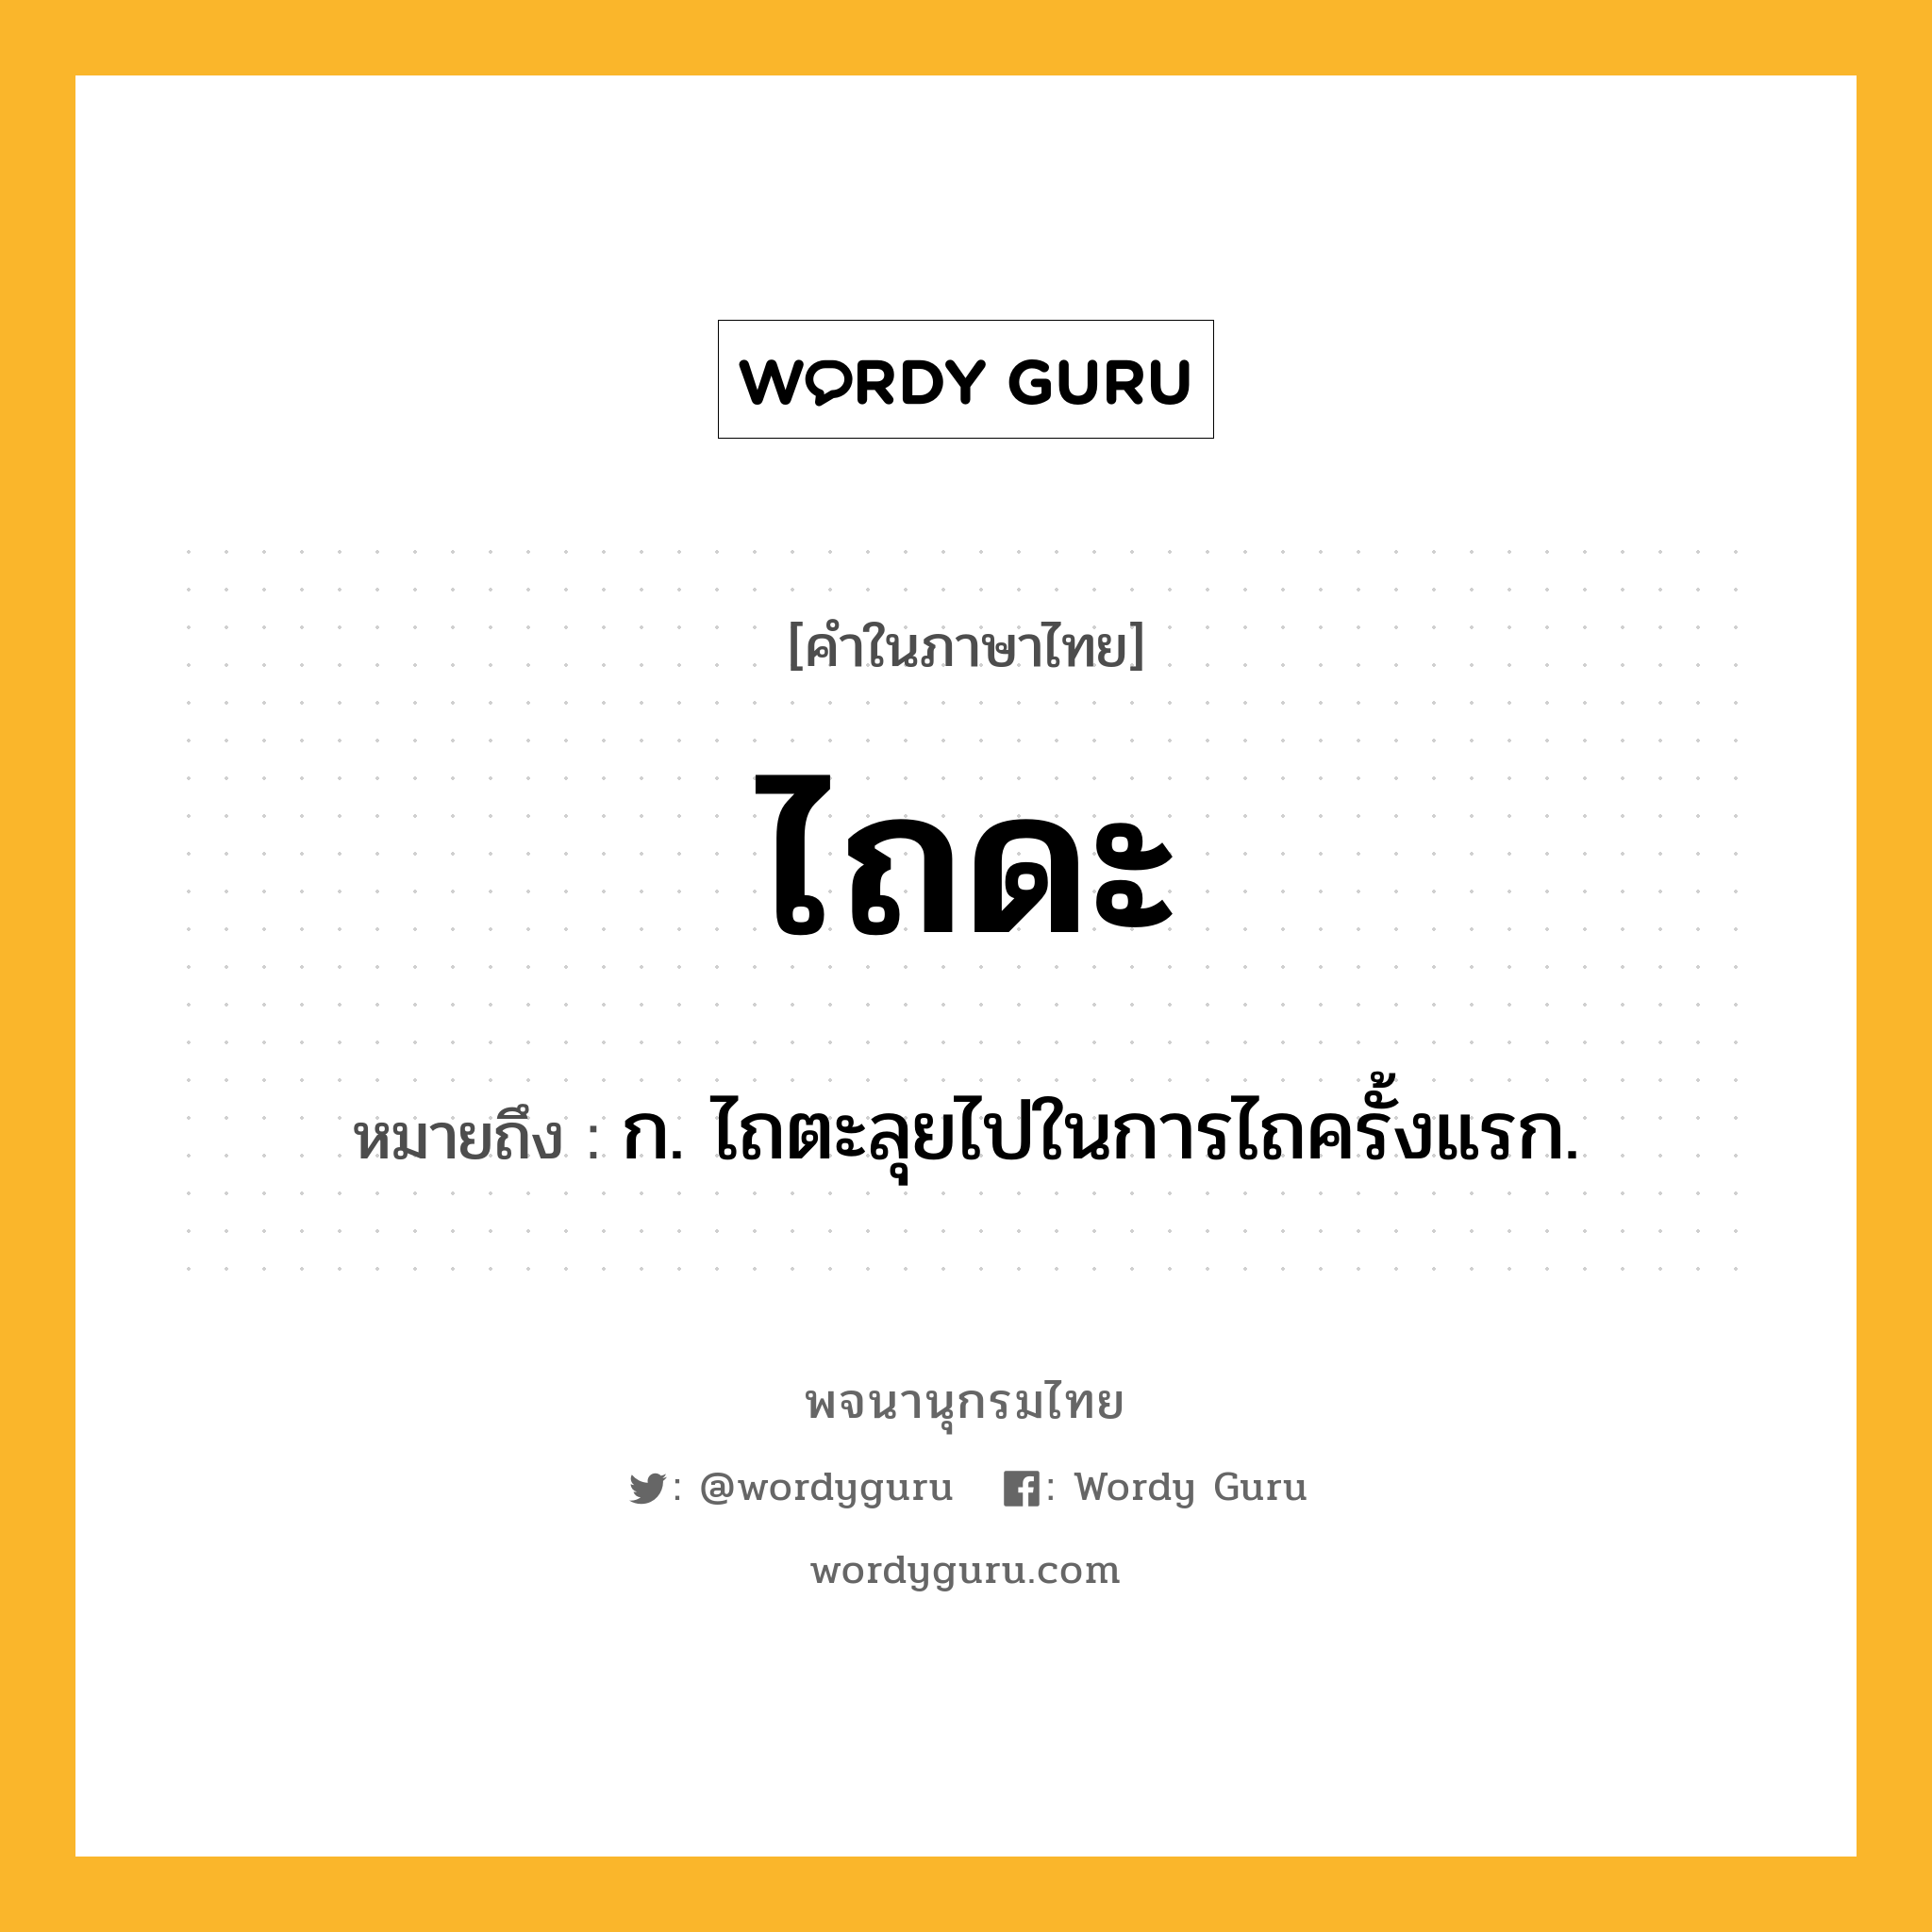 ไถดะ ความหมาย หมายถึงอะไร?, คำในภาษาไทย ไถดะ หมายถึง ก. ไถตะลุยไปในการไถครั้งแรก.